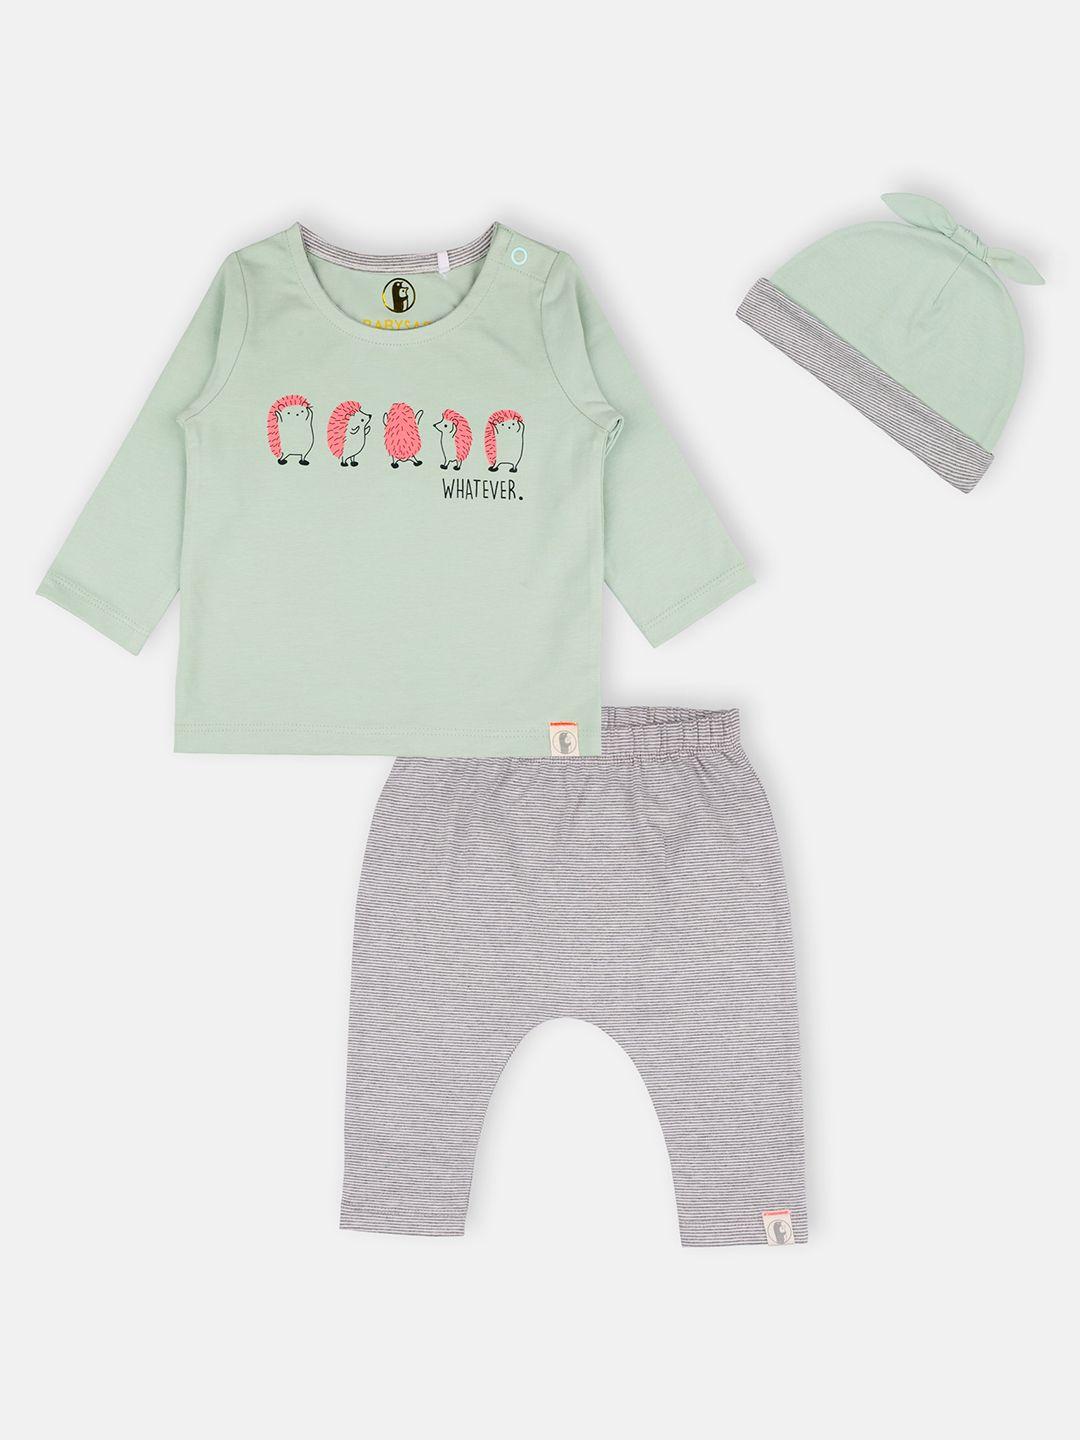 babysafe boys green & grey printed t-shirt with pyjamas